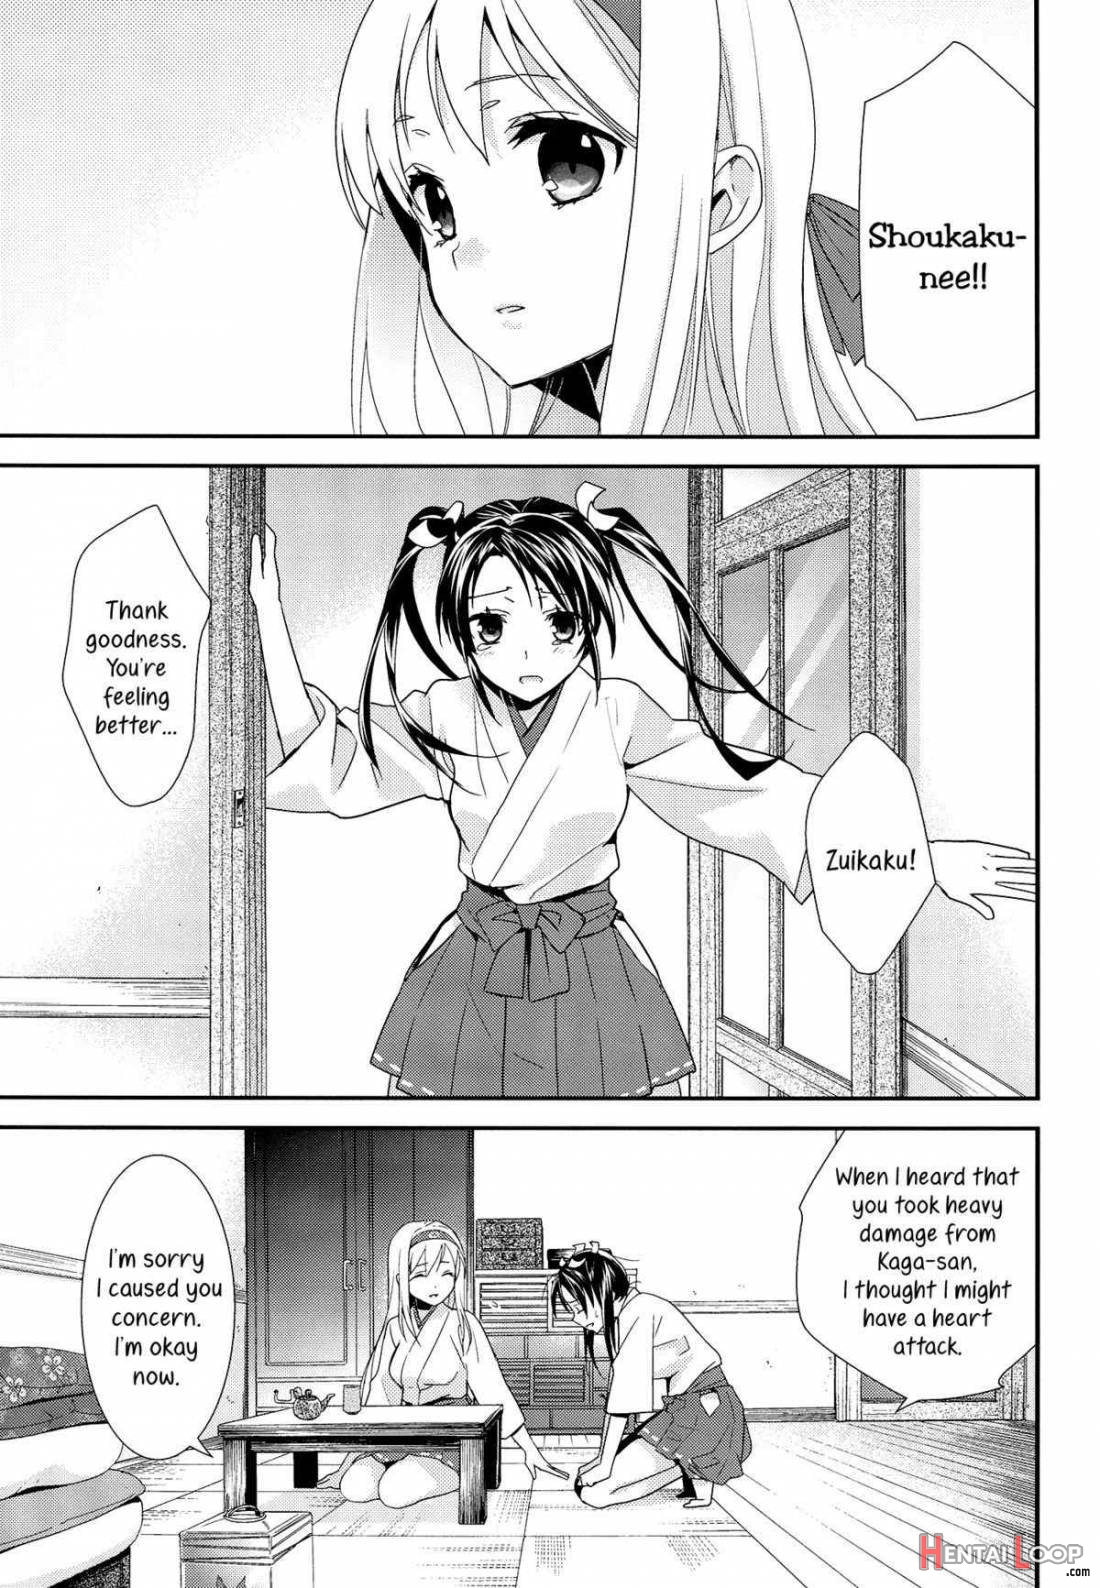 Yurizuru page 3